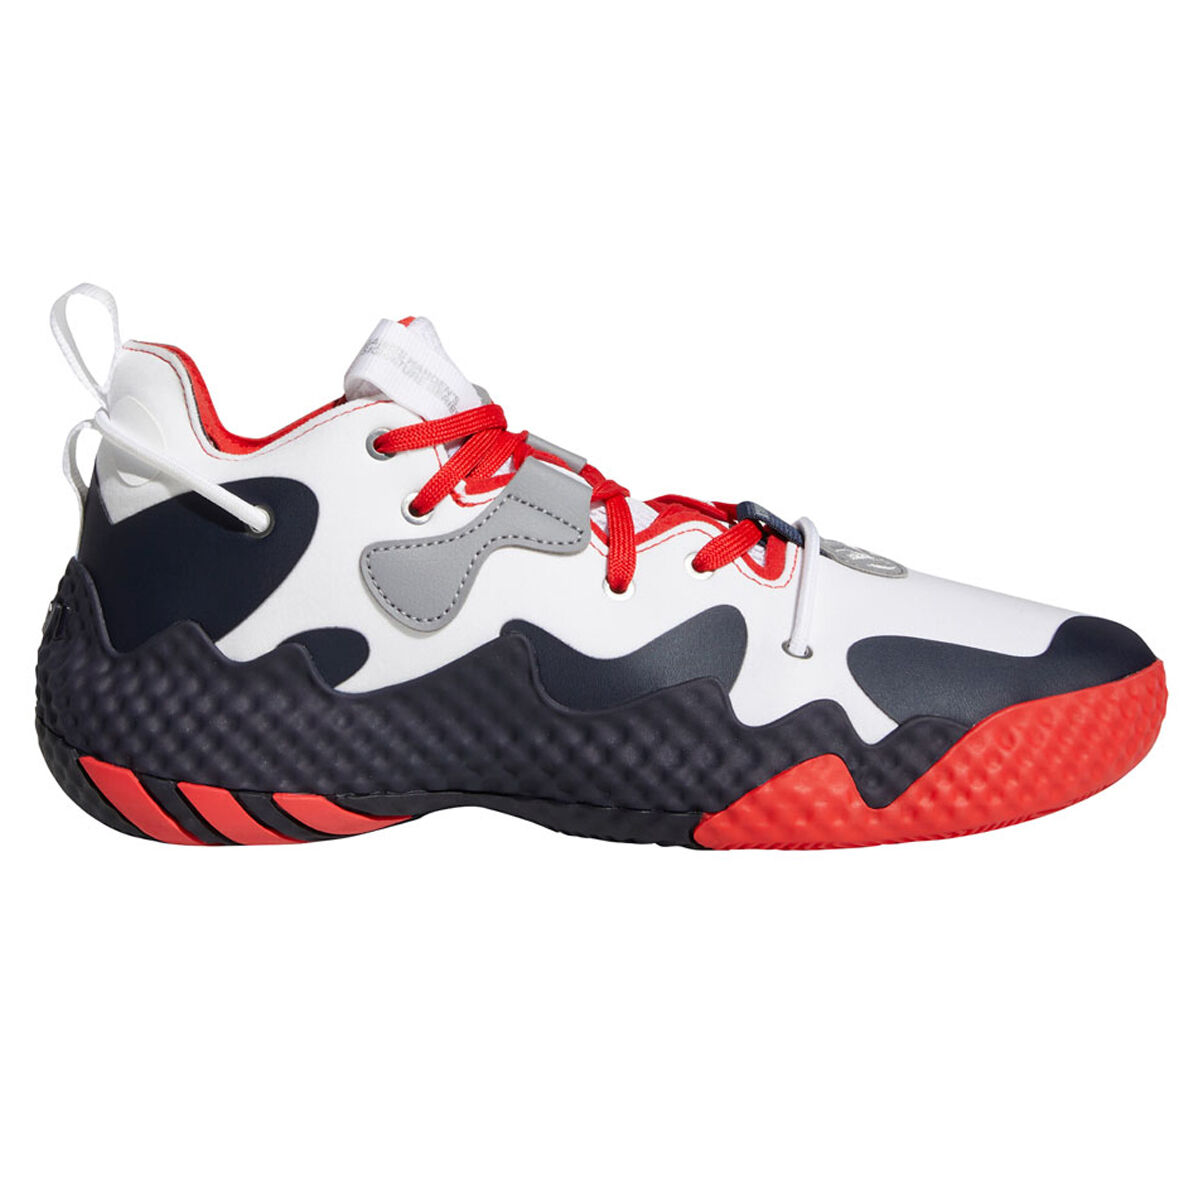 JD Sports Sport & Swimwear Sportswear Sports Shoes Basketball 6 Basketball Shoes Harden Vol 